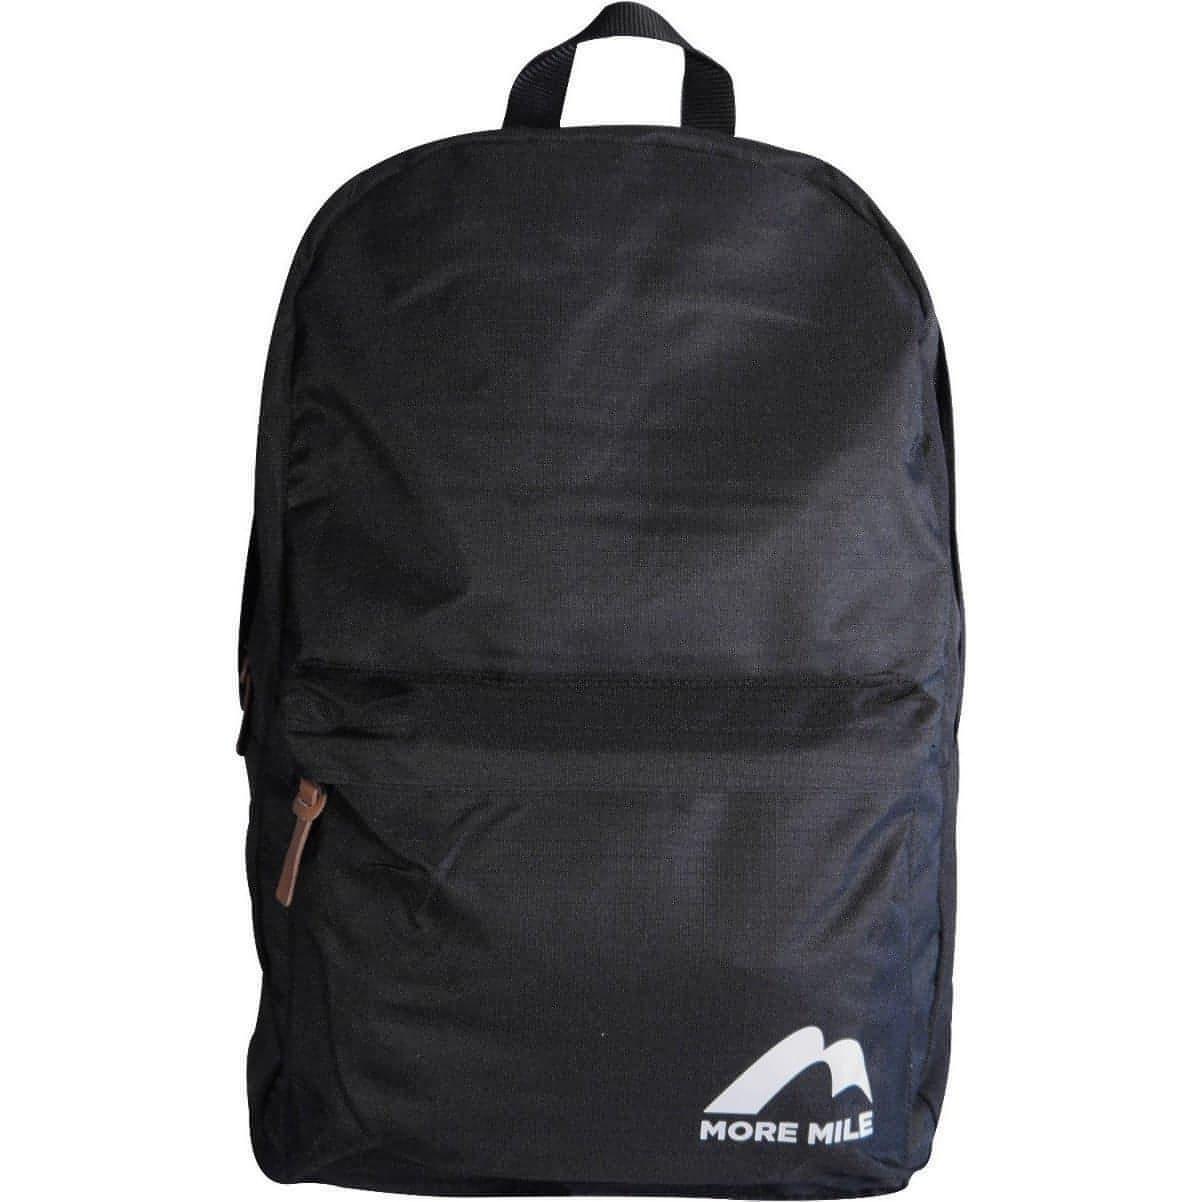 More Mile Cross Avenue Backpack - Black 5057775301653 - Start Fitness